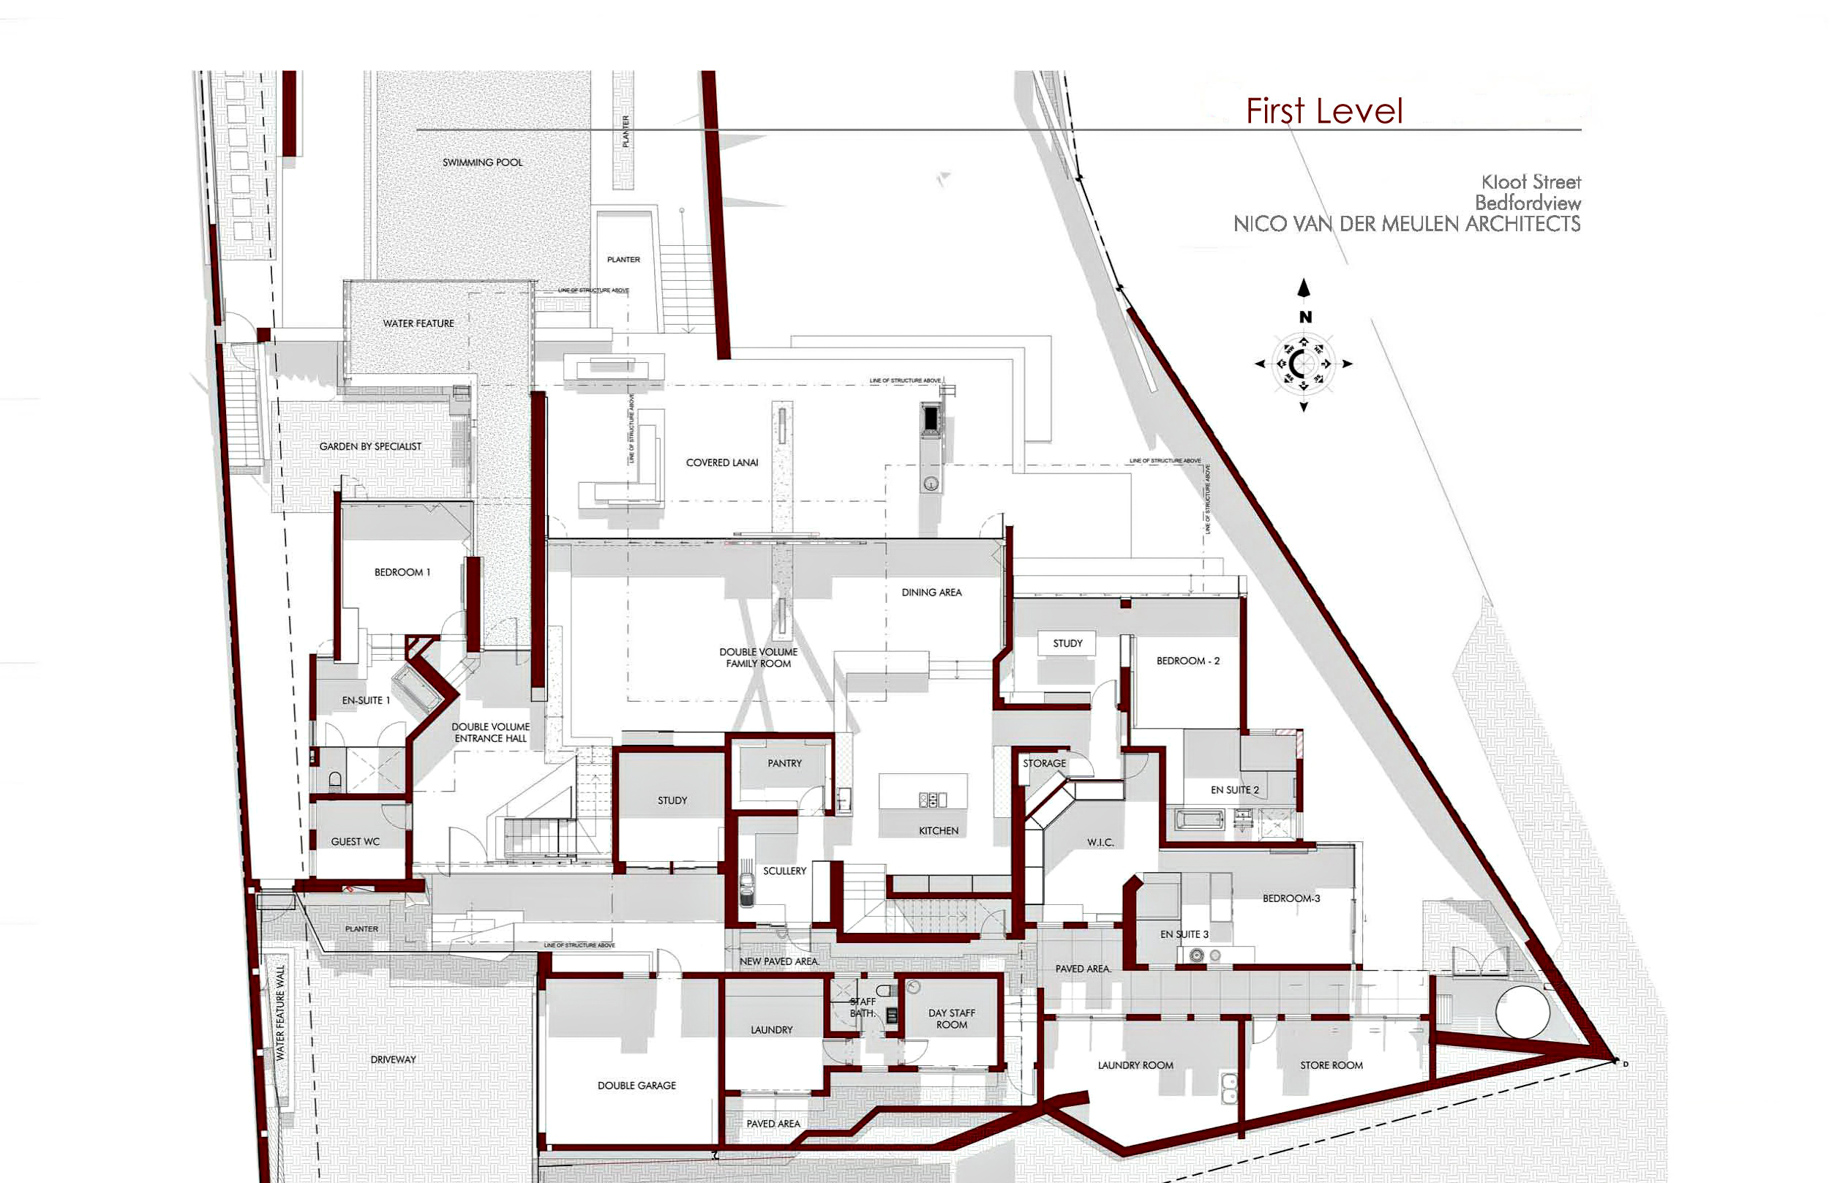 First Level Floor Plan - Kloof Ana House - Bedfordview, Gauteng, South Africa